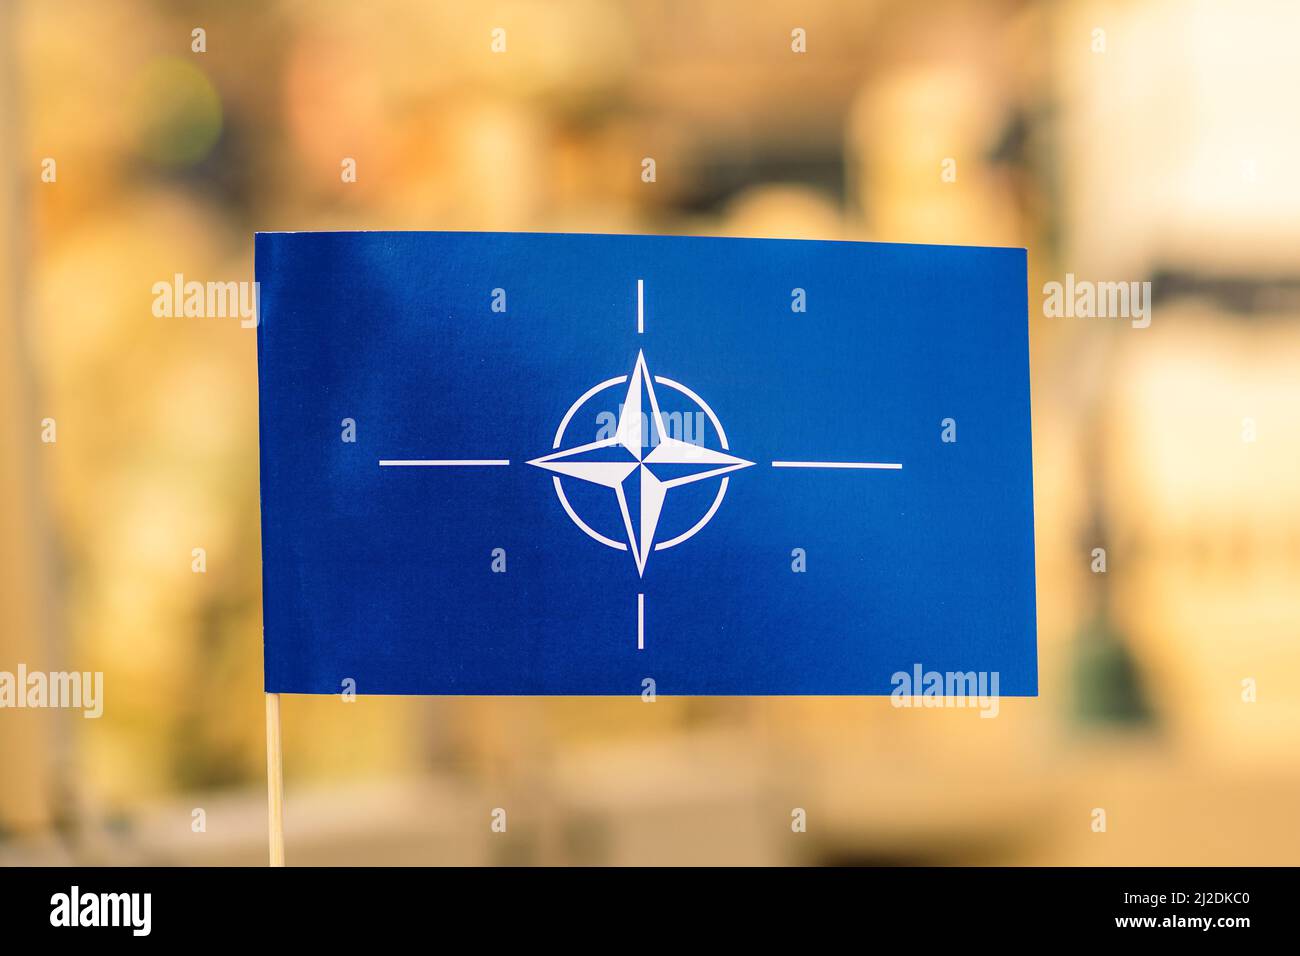 Drapeau et symbole de l'OTAN, Organisation du Traité de l'Atlantique Nord, unité d'intégration de la force avec un contexte hors foyer Banque D'Images